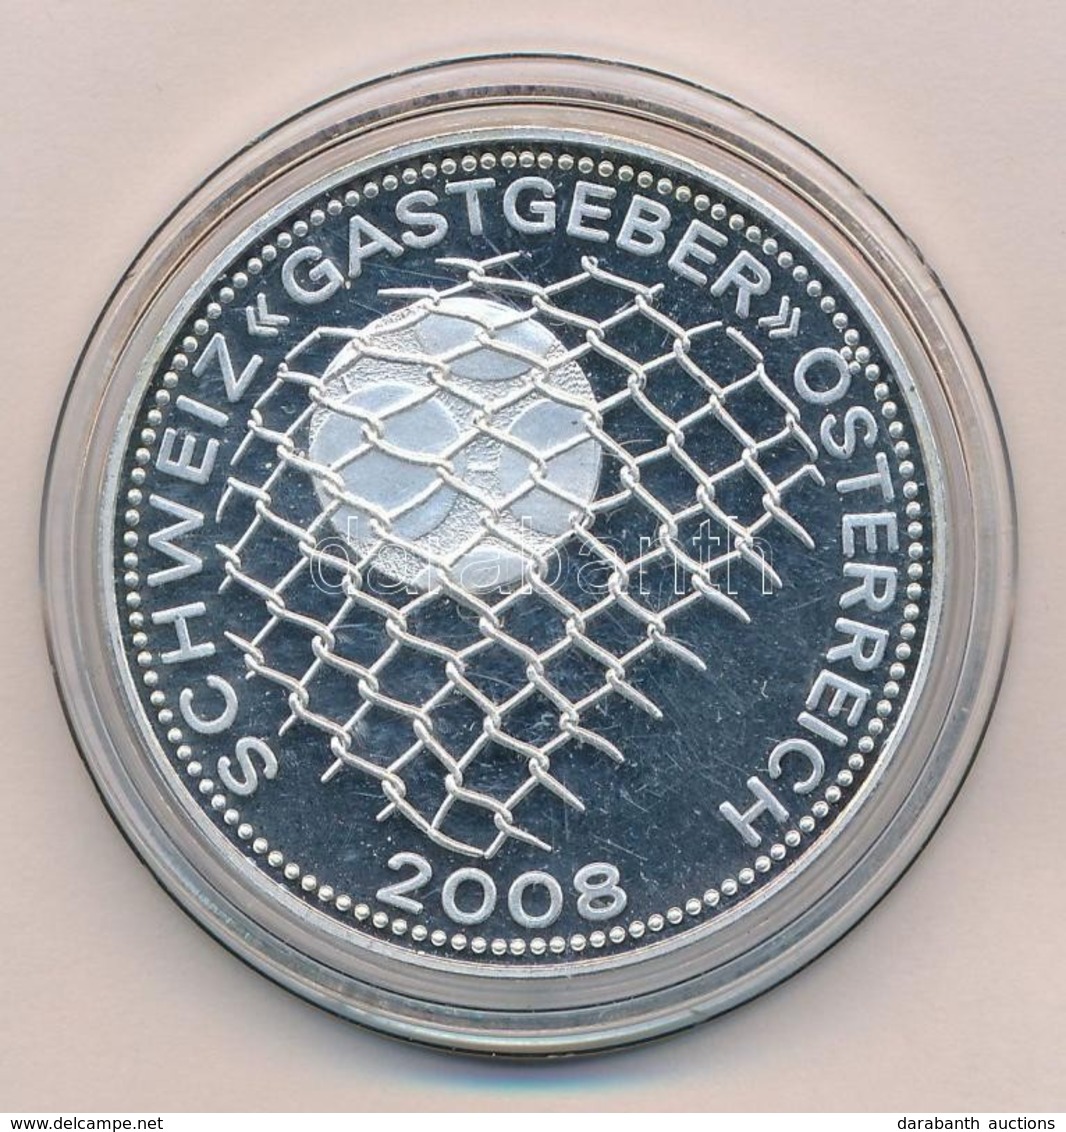 2007. 'Schweiz - Gastgeber - Österreich 2008.' Cu-Ni-Zn Emlékérme (33mm) T:PP
2007. 'Schweiz - Gastgeber - Österreich 20 - Ohne Zuordnung